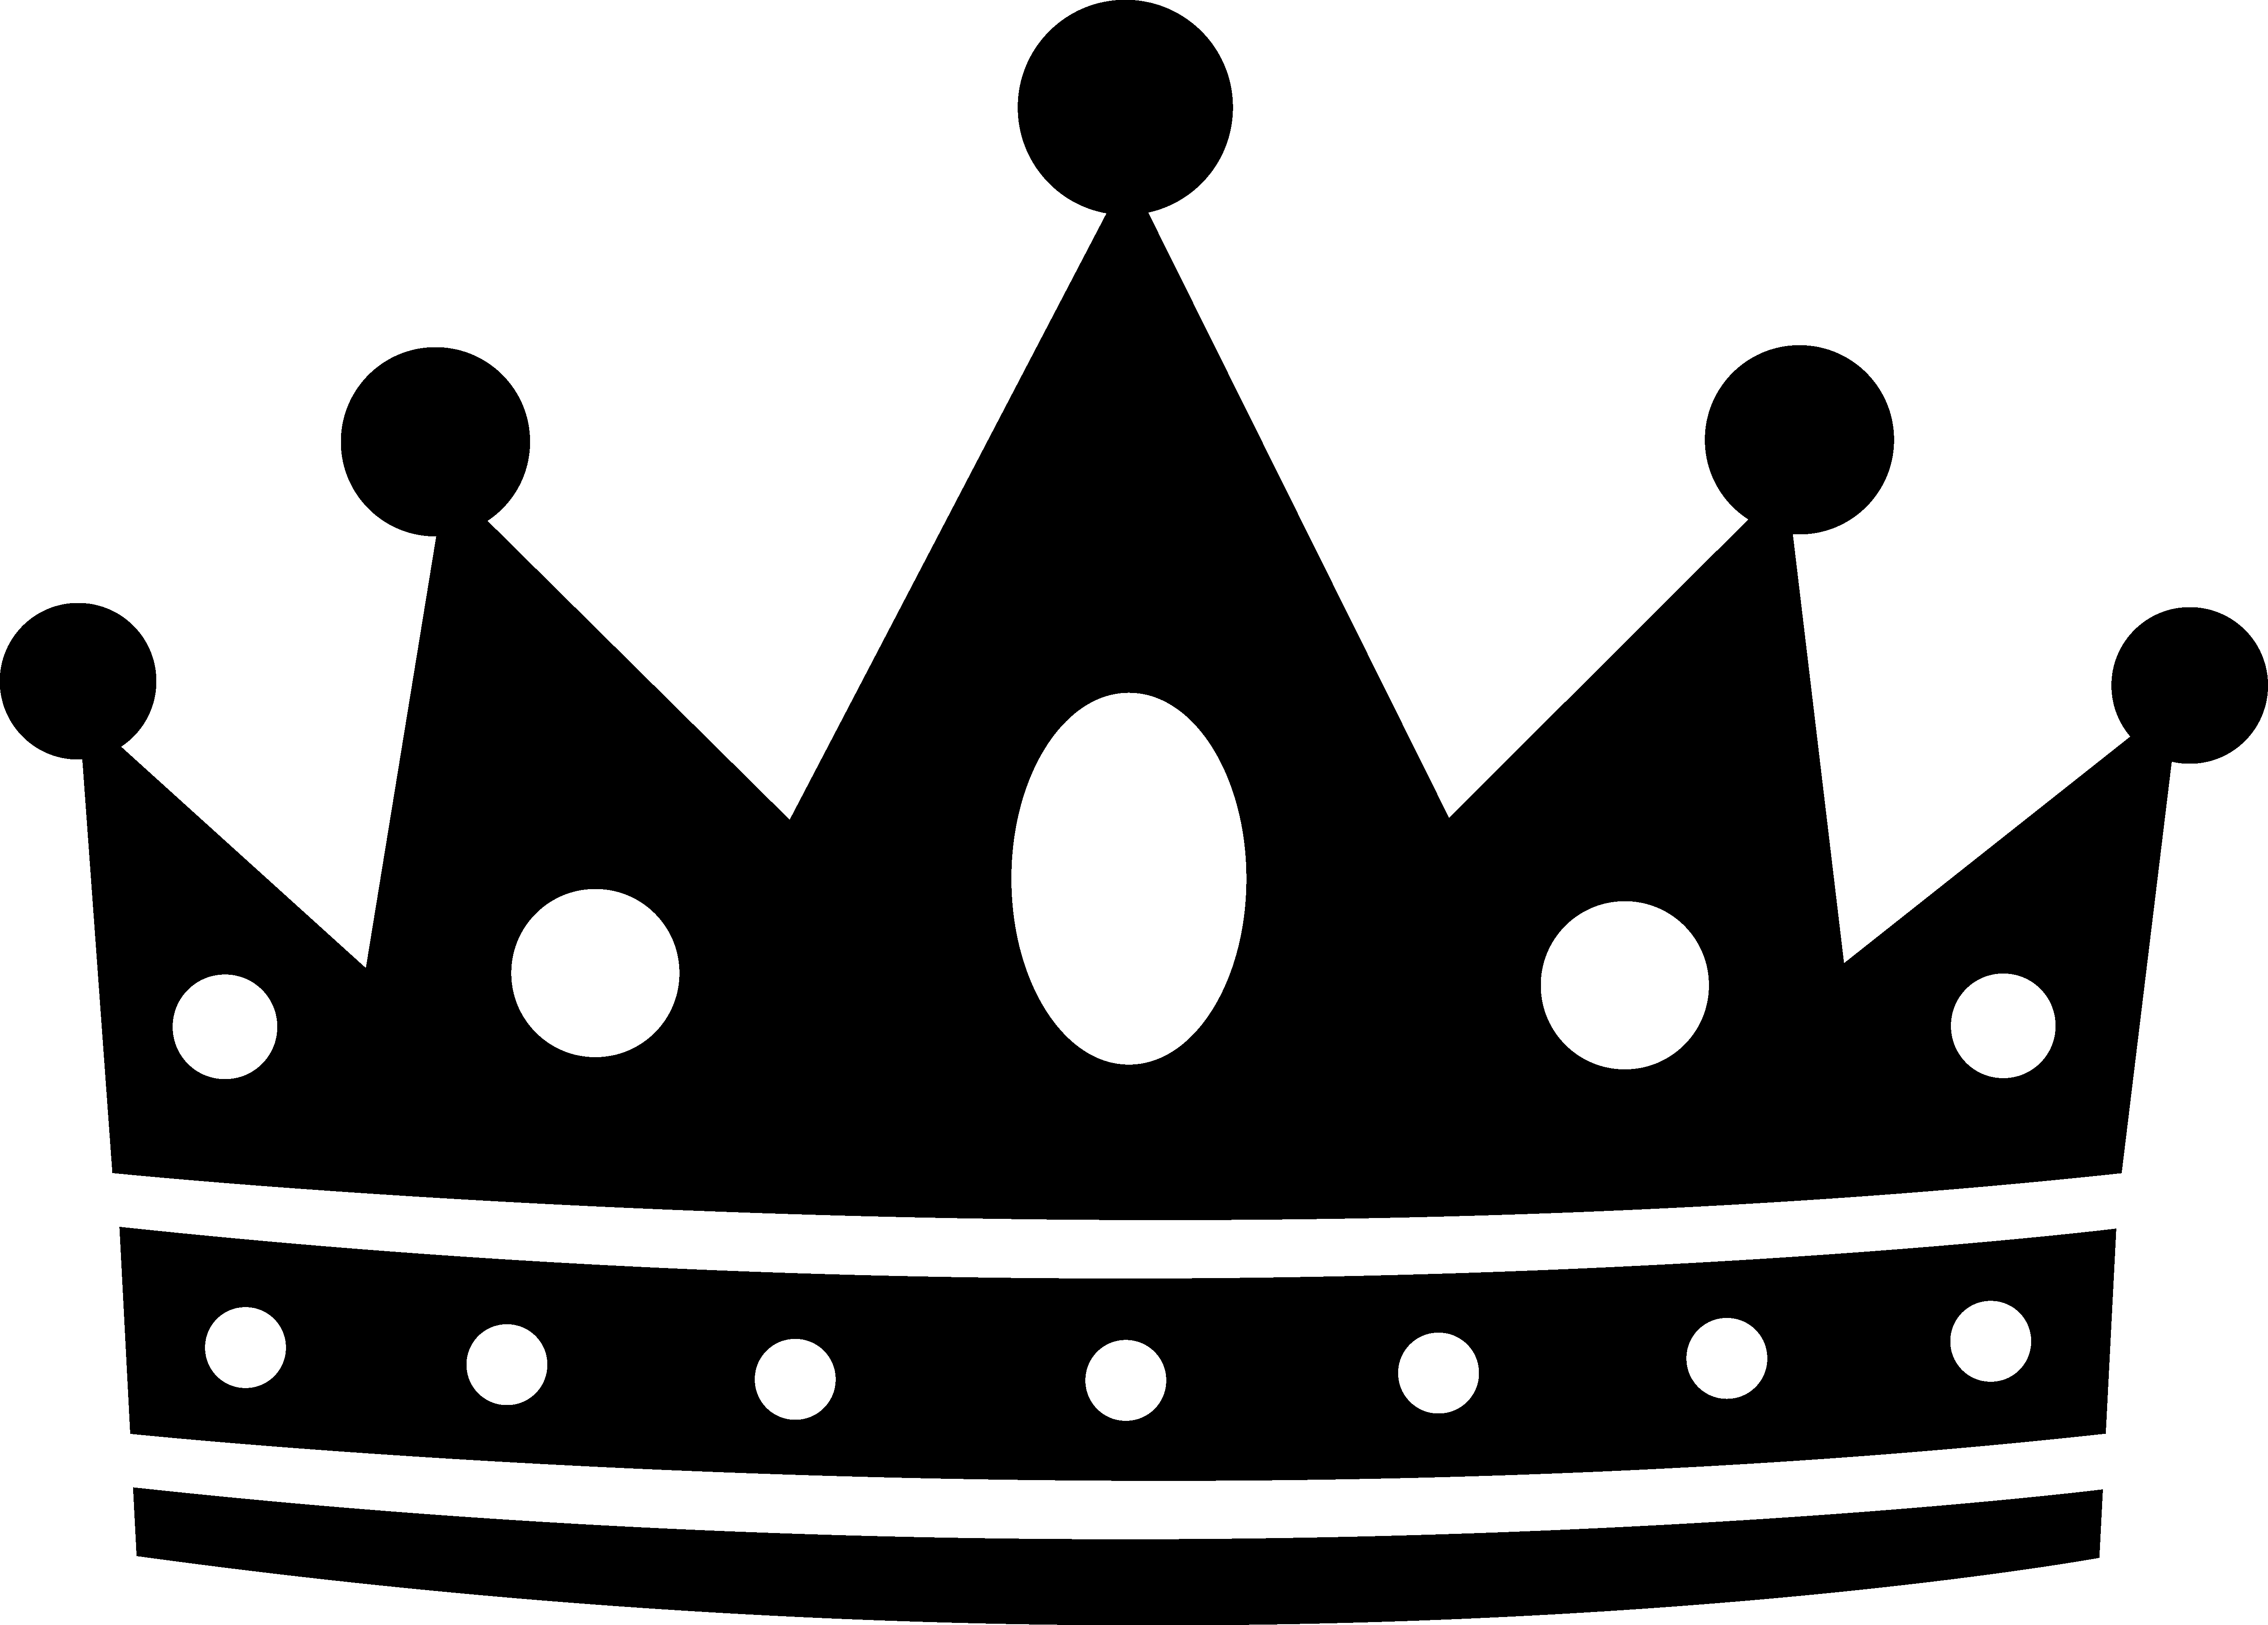 Black Royal Crown Silhouette - Free Clip Art